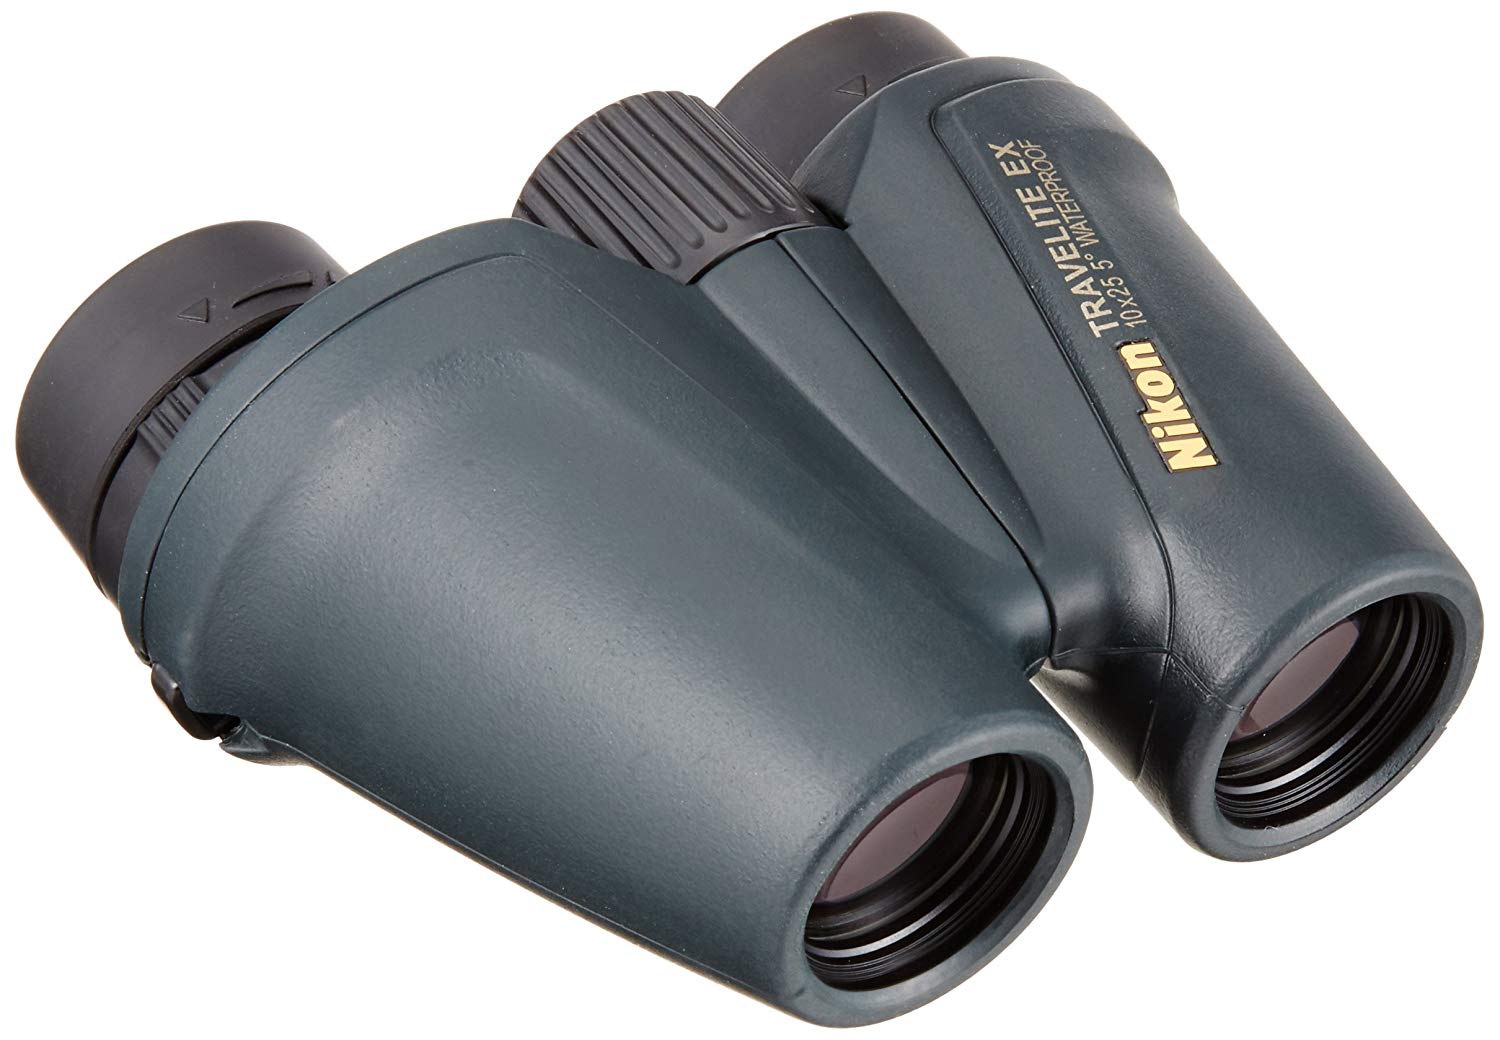 TThumbnail image for Nikon Binoculars 10X25 CF Travelite EX